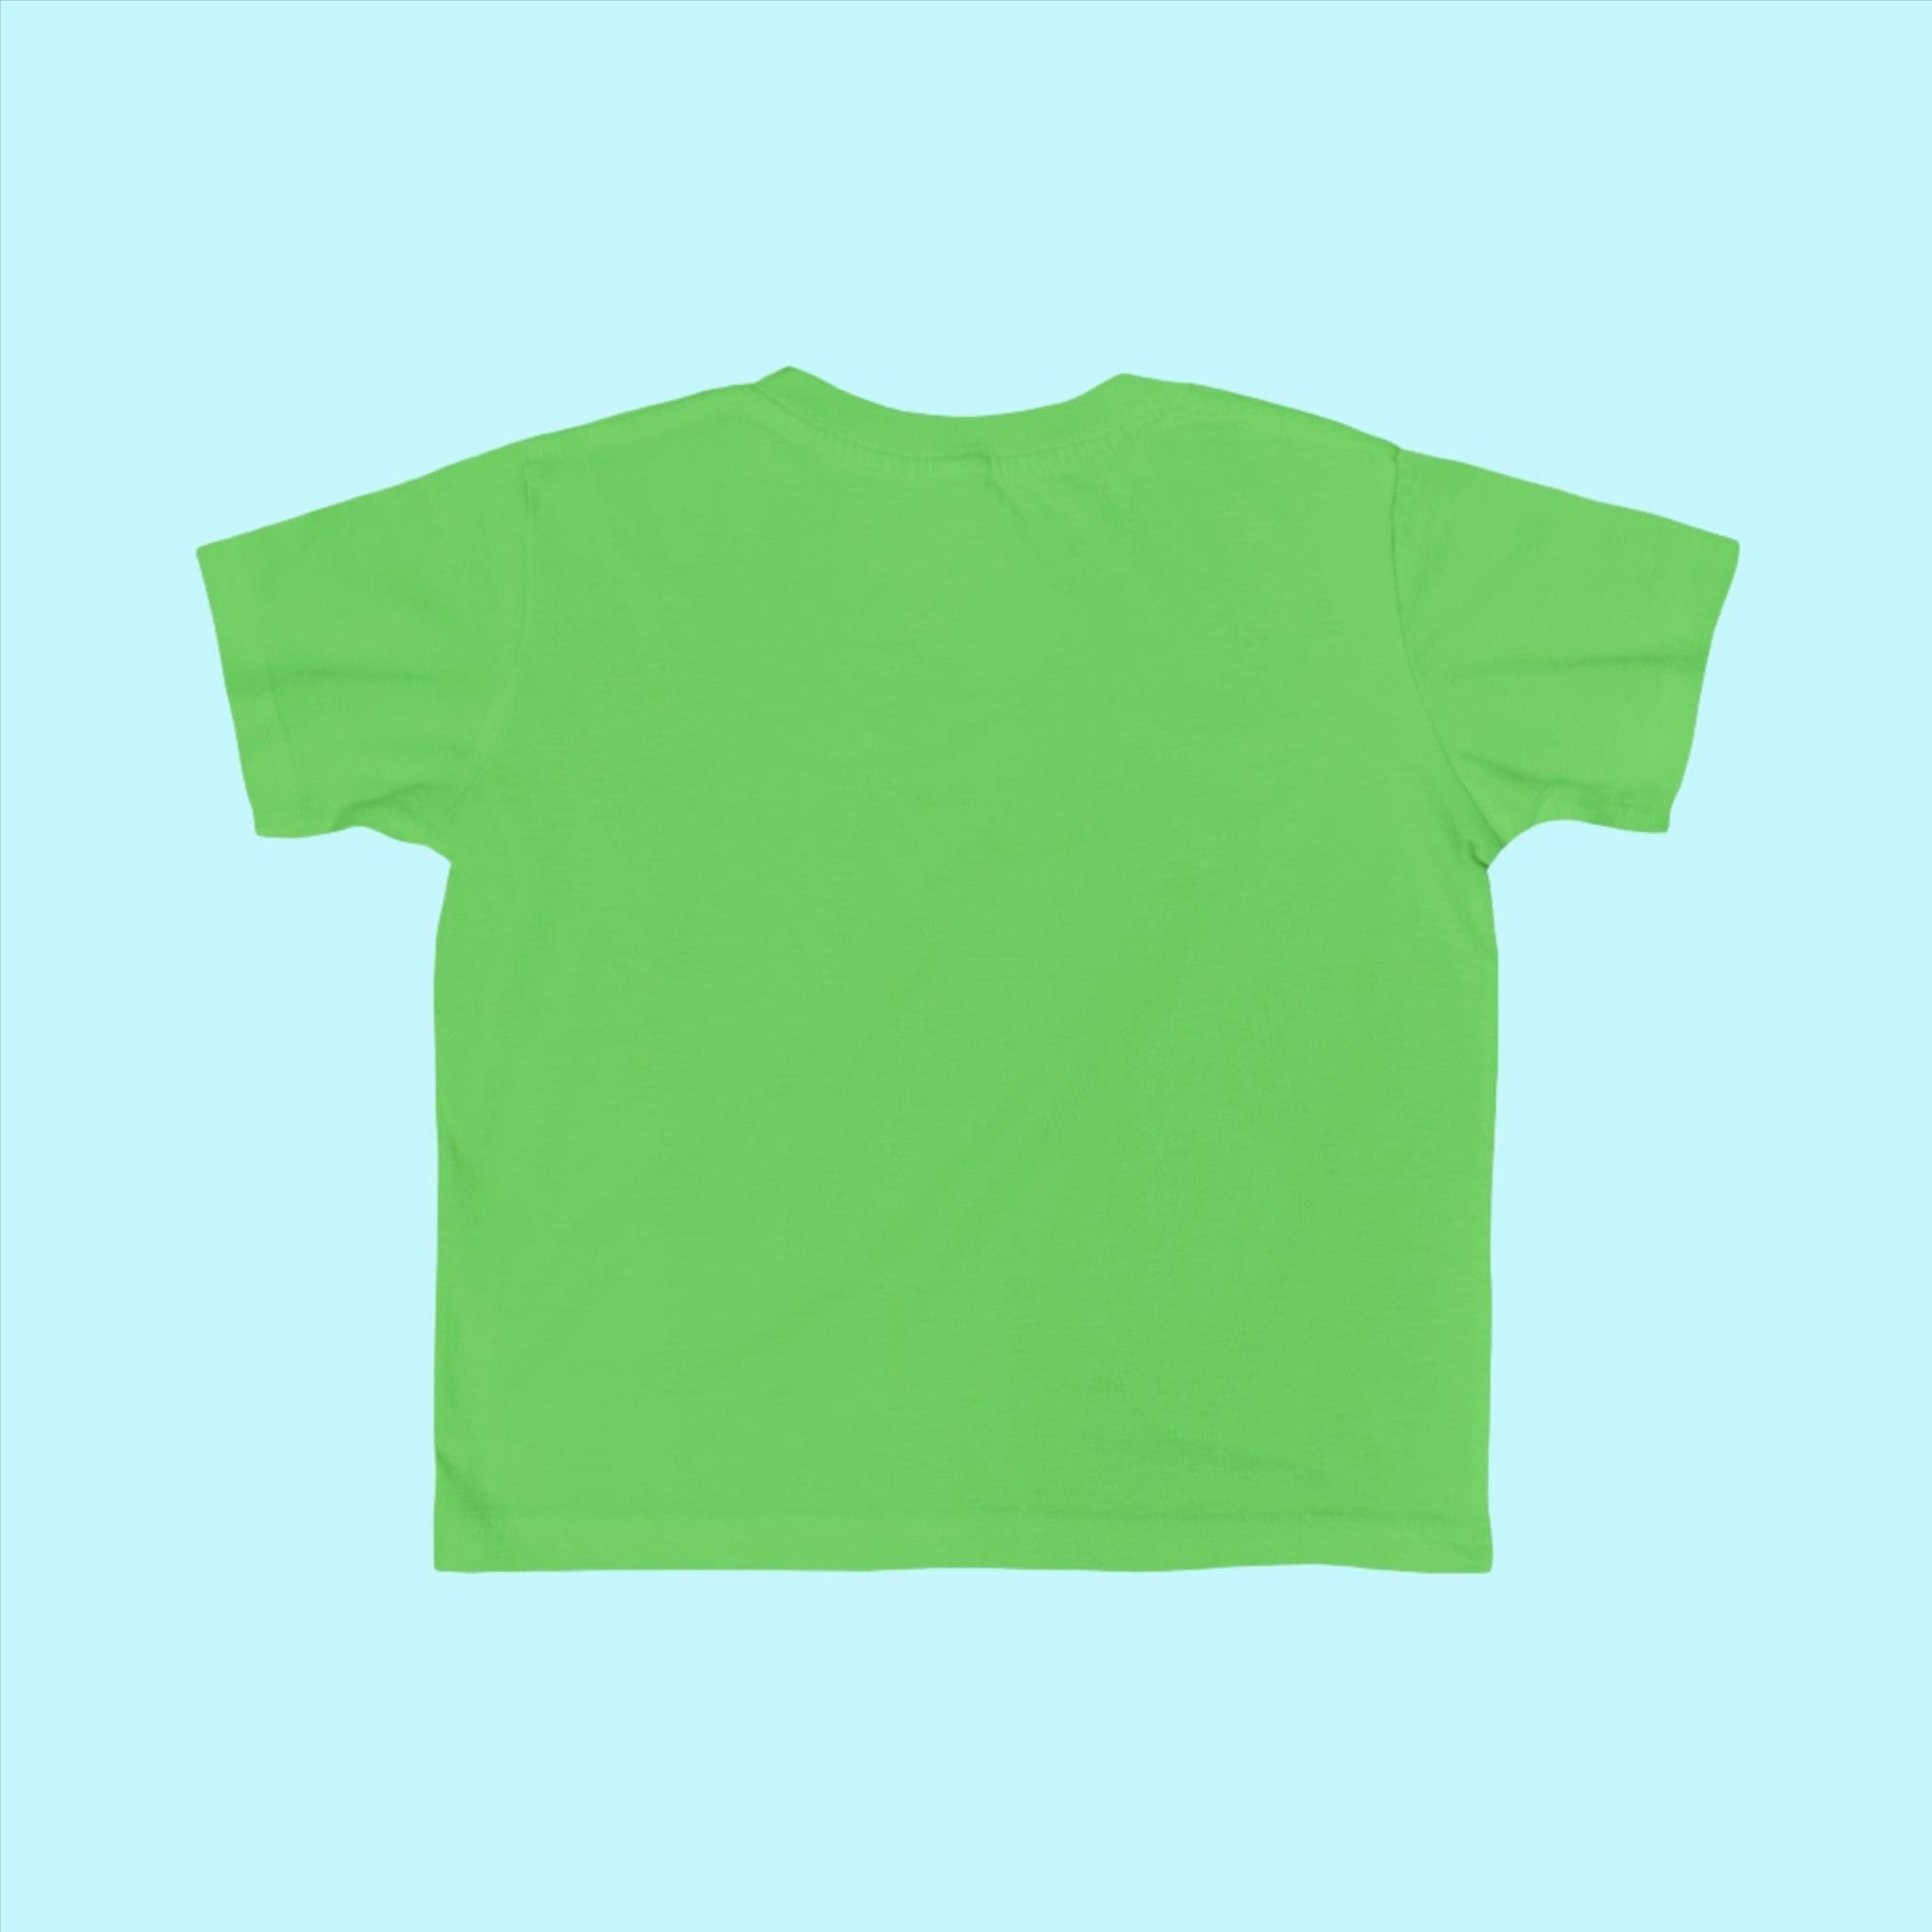 Apple Toddler Football Fan Jersey T-Shirt